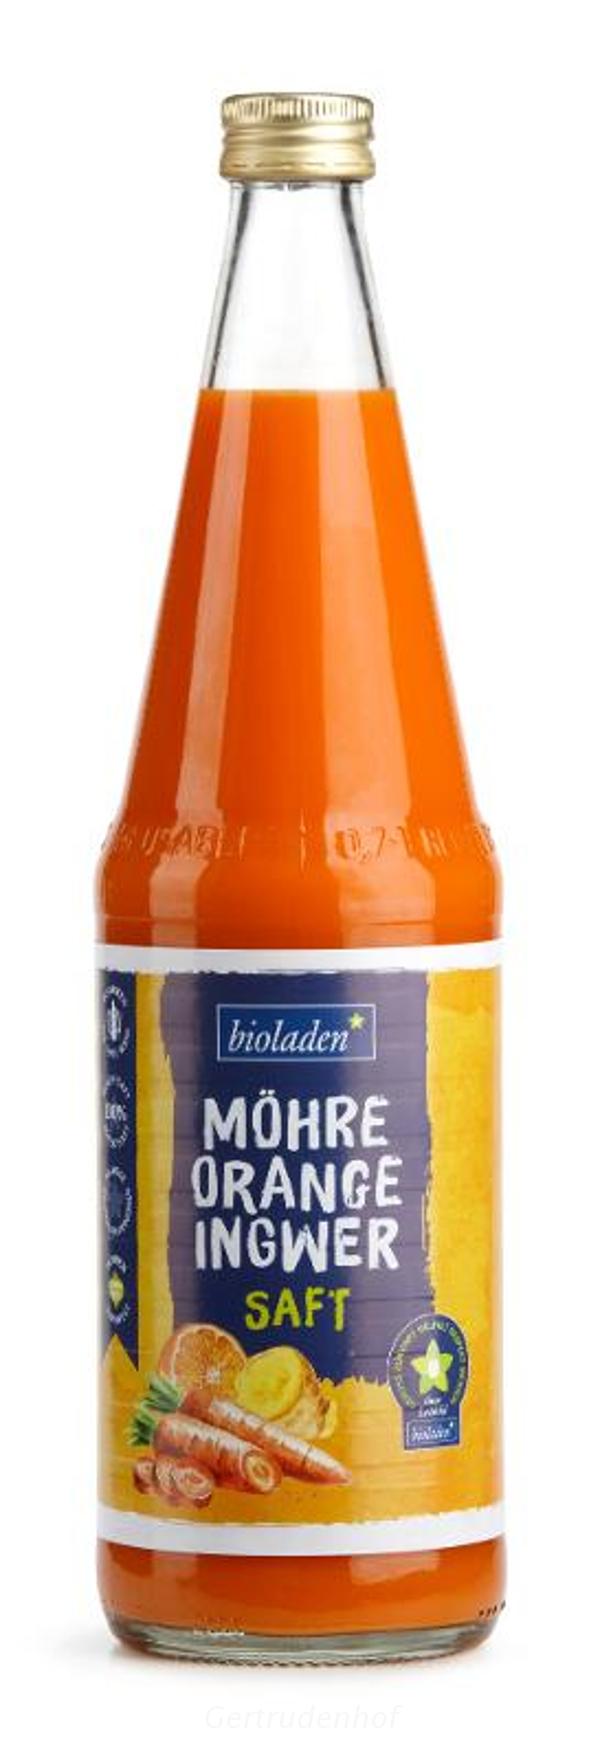 Produktfoto zu Möhre-Orange-Ingwer Saft WBI